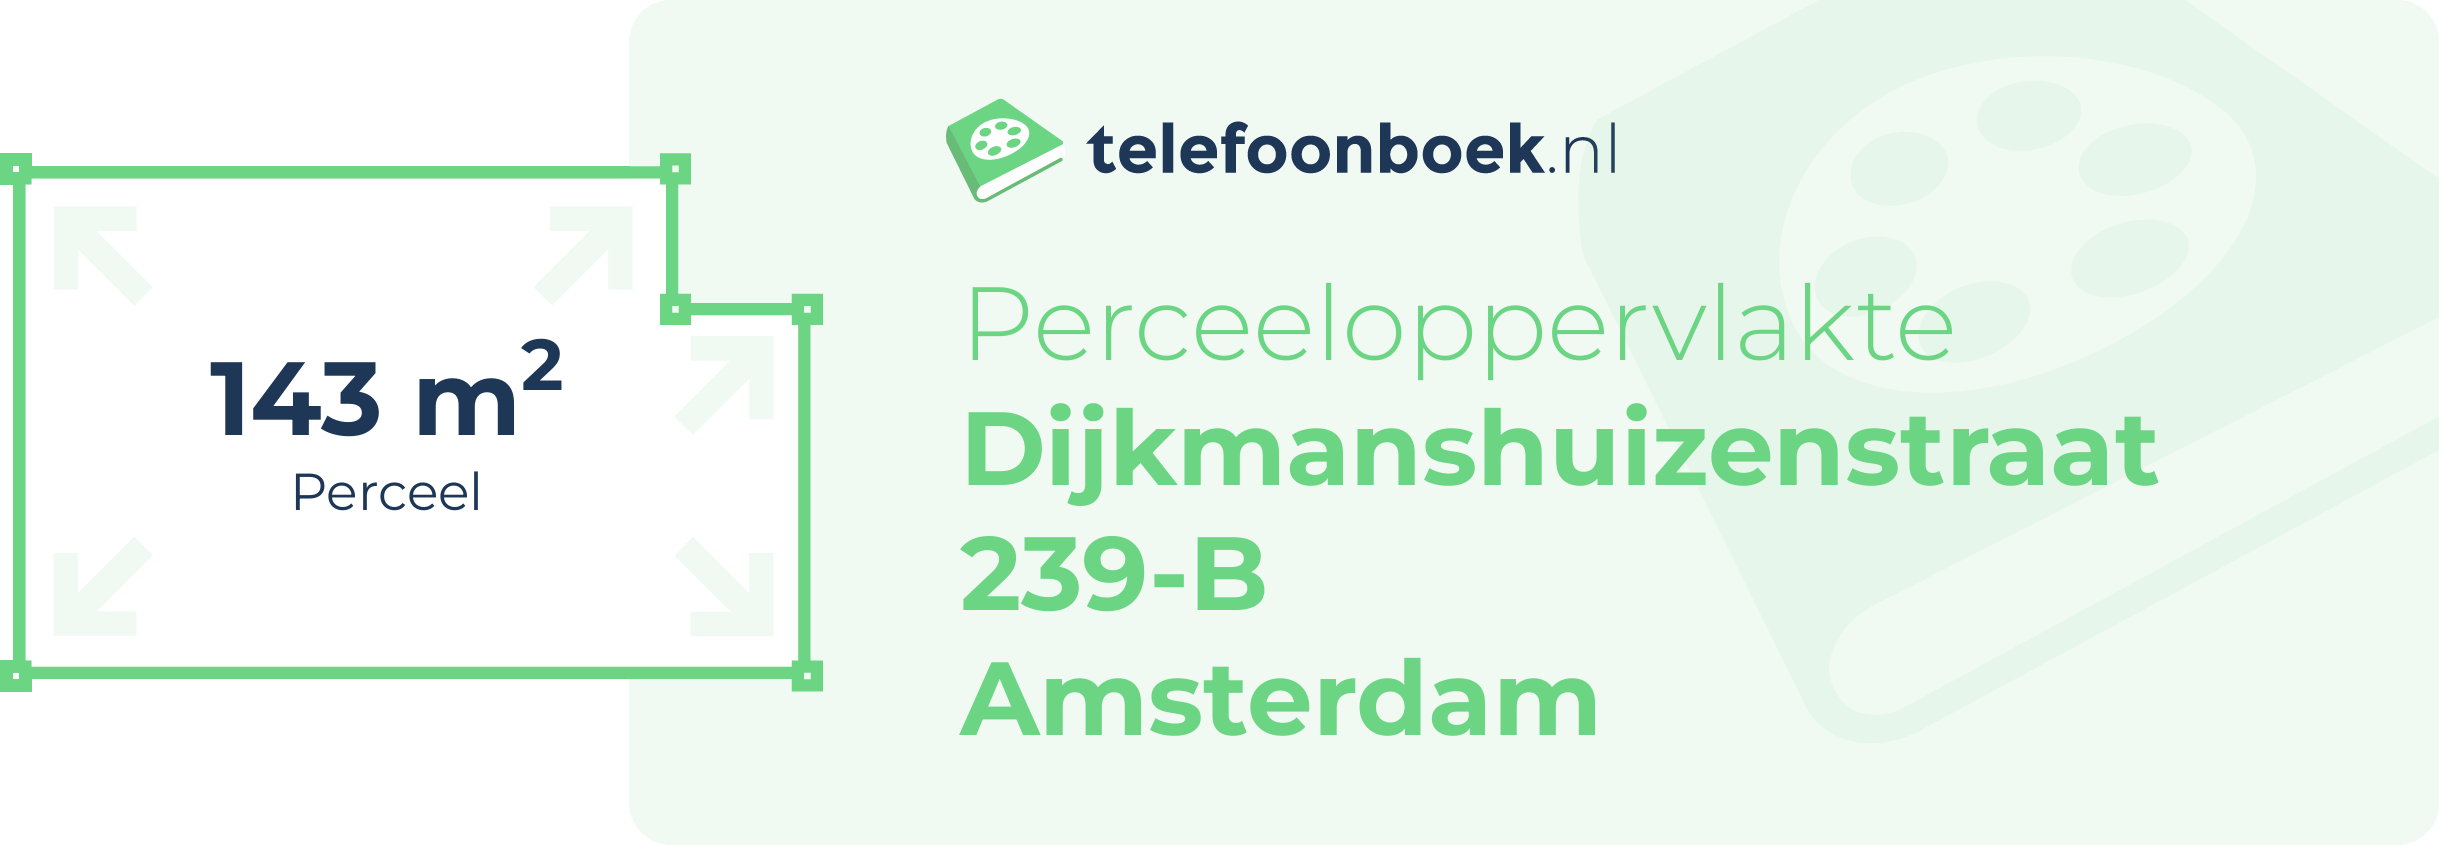 Perceeloppervlakte Dijkmanshuizenstraat 239-B Amsterdam